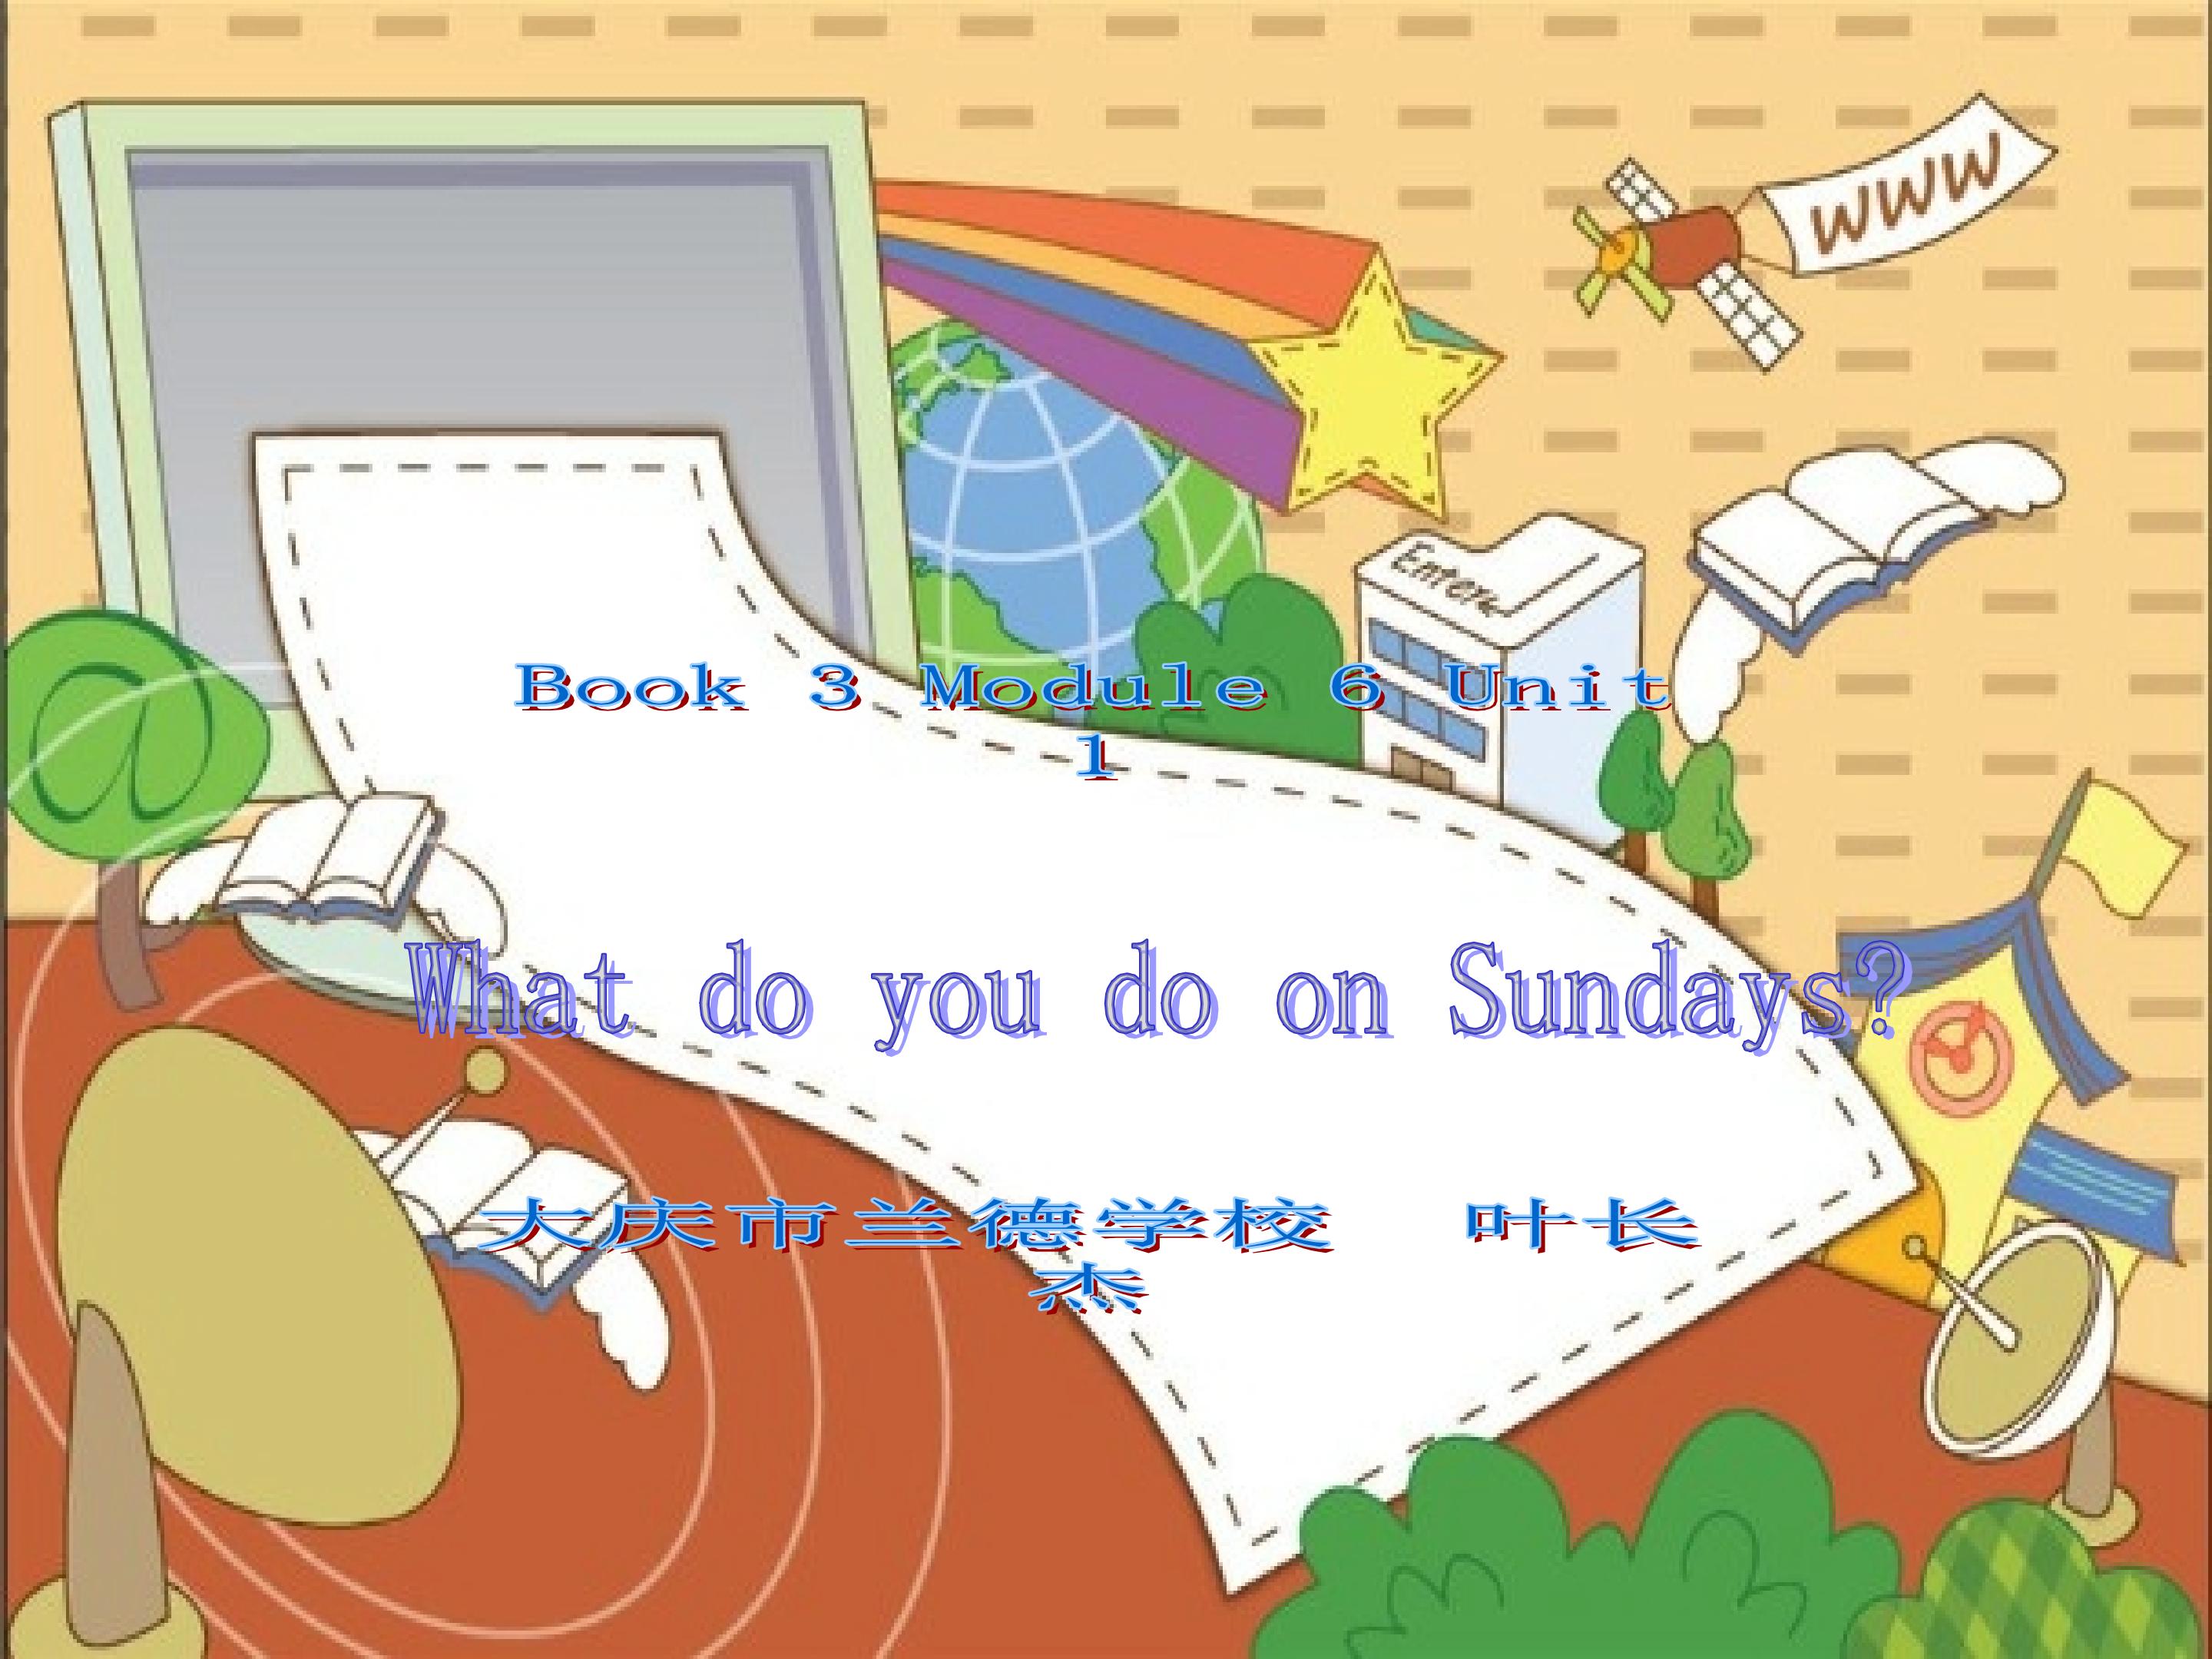 What do you do on Sundays?